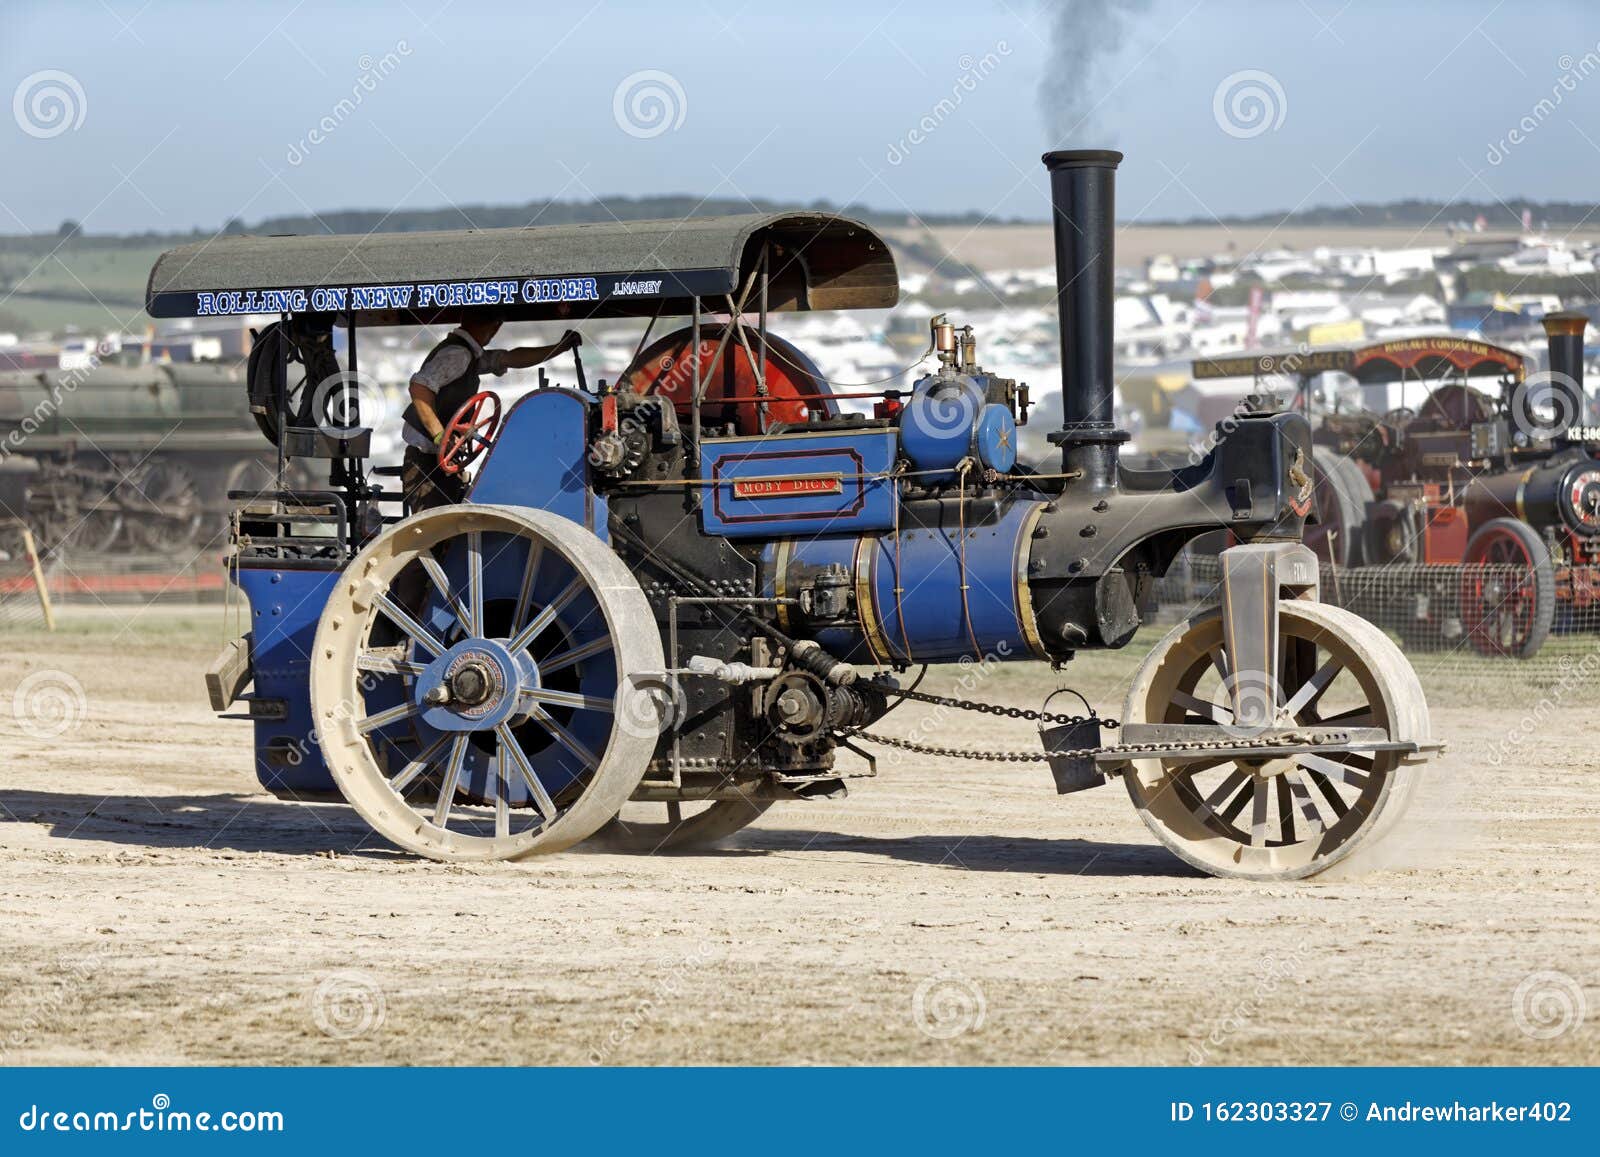 Great dorset steam fair фото 106